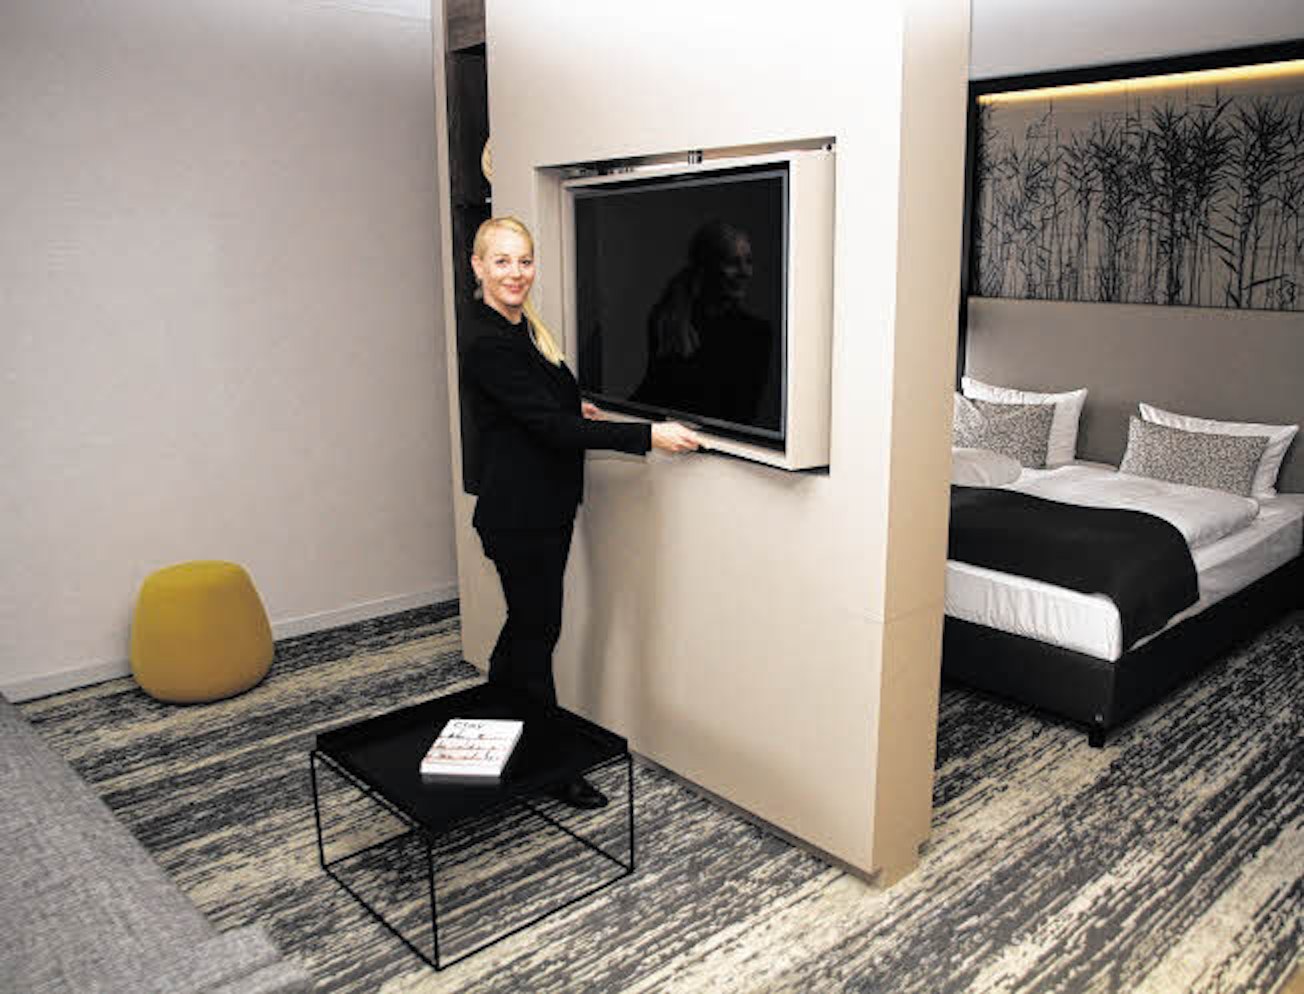 Zu den Neuerungen in den renovierten Hotelzimmern gehören Tablet-Computer, die Informationen zum Hotel, der Region, Unterhaltungsangeboten in der Stadt und vielem mehr bieten.